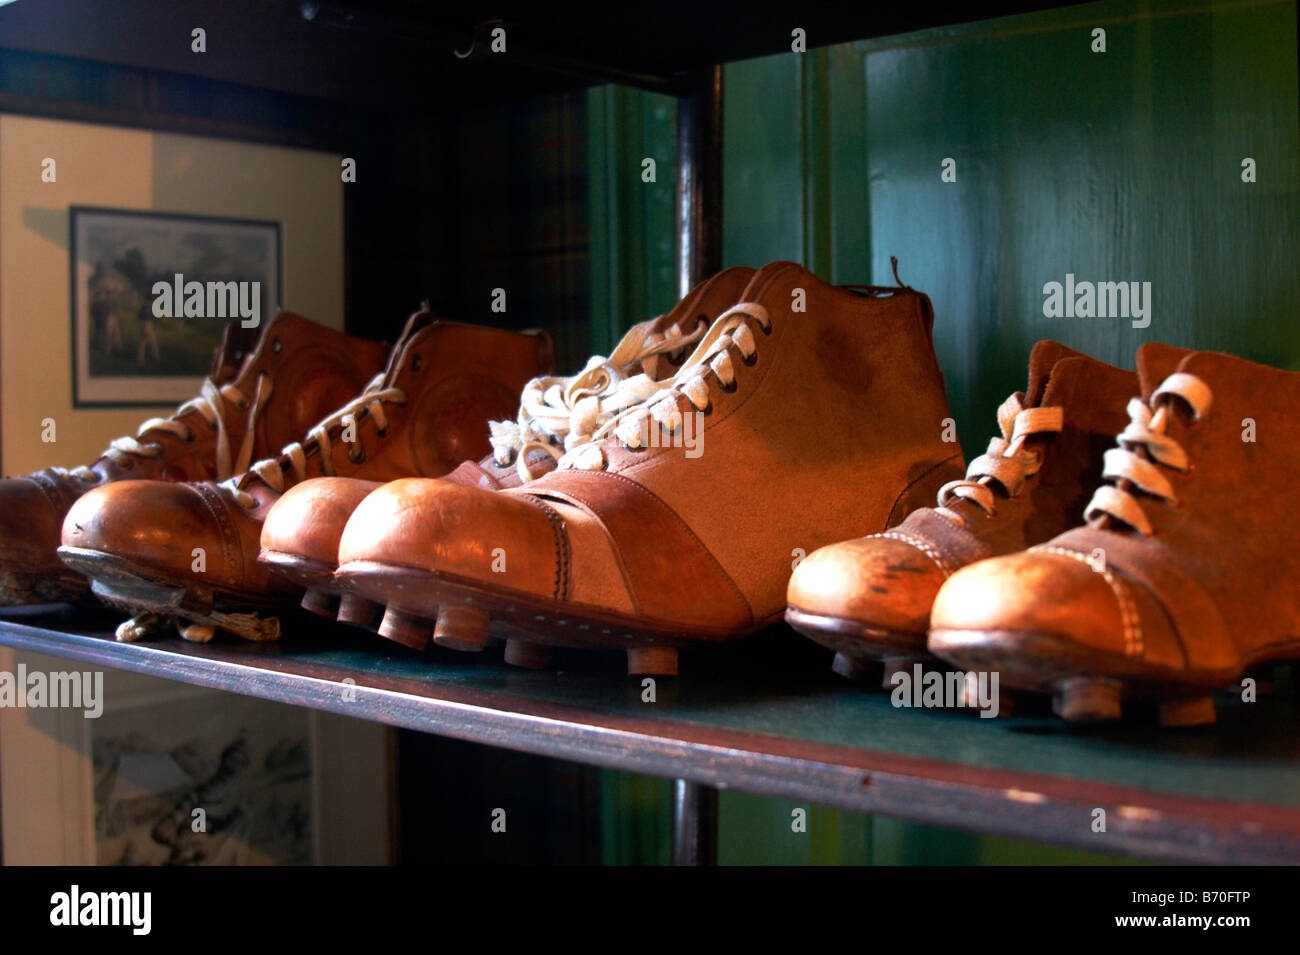 Scarpe da calcio vecchie immagini e fotografie stock ad alta risoluzione -  Alamy